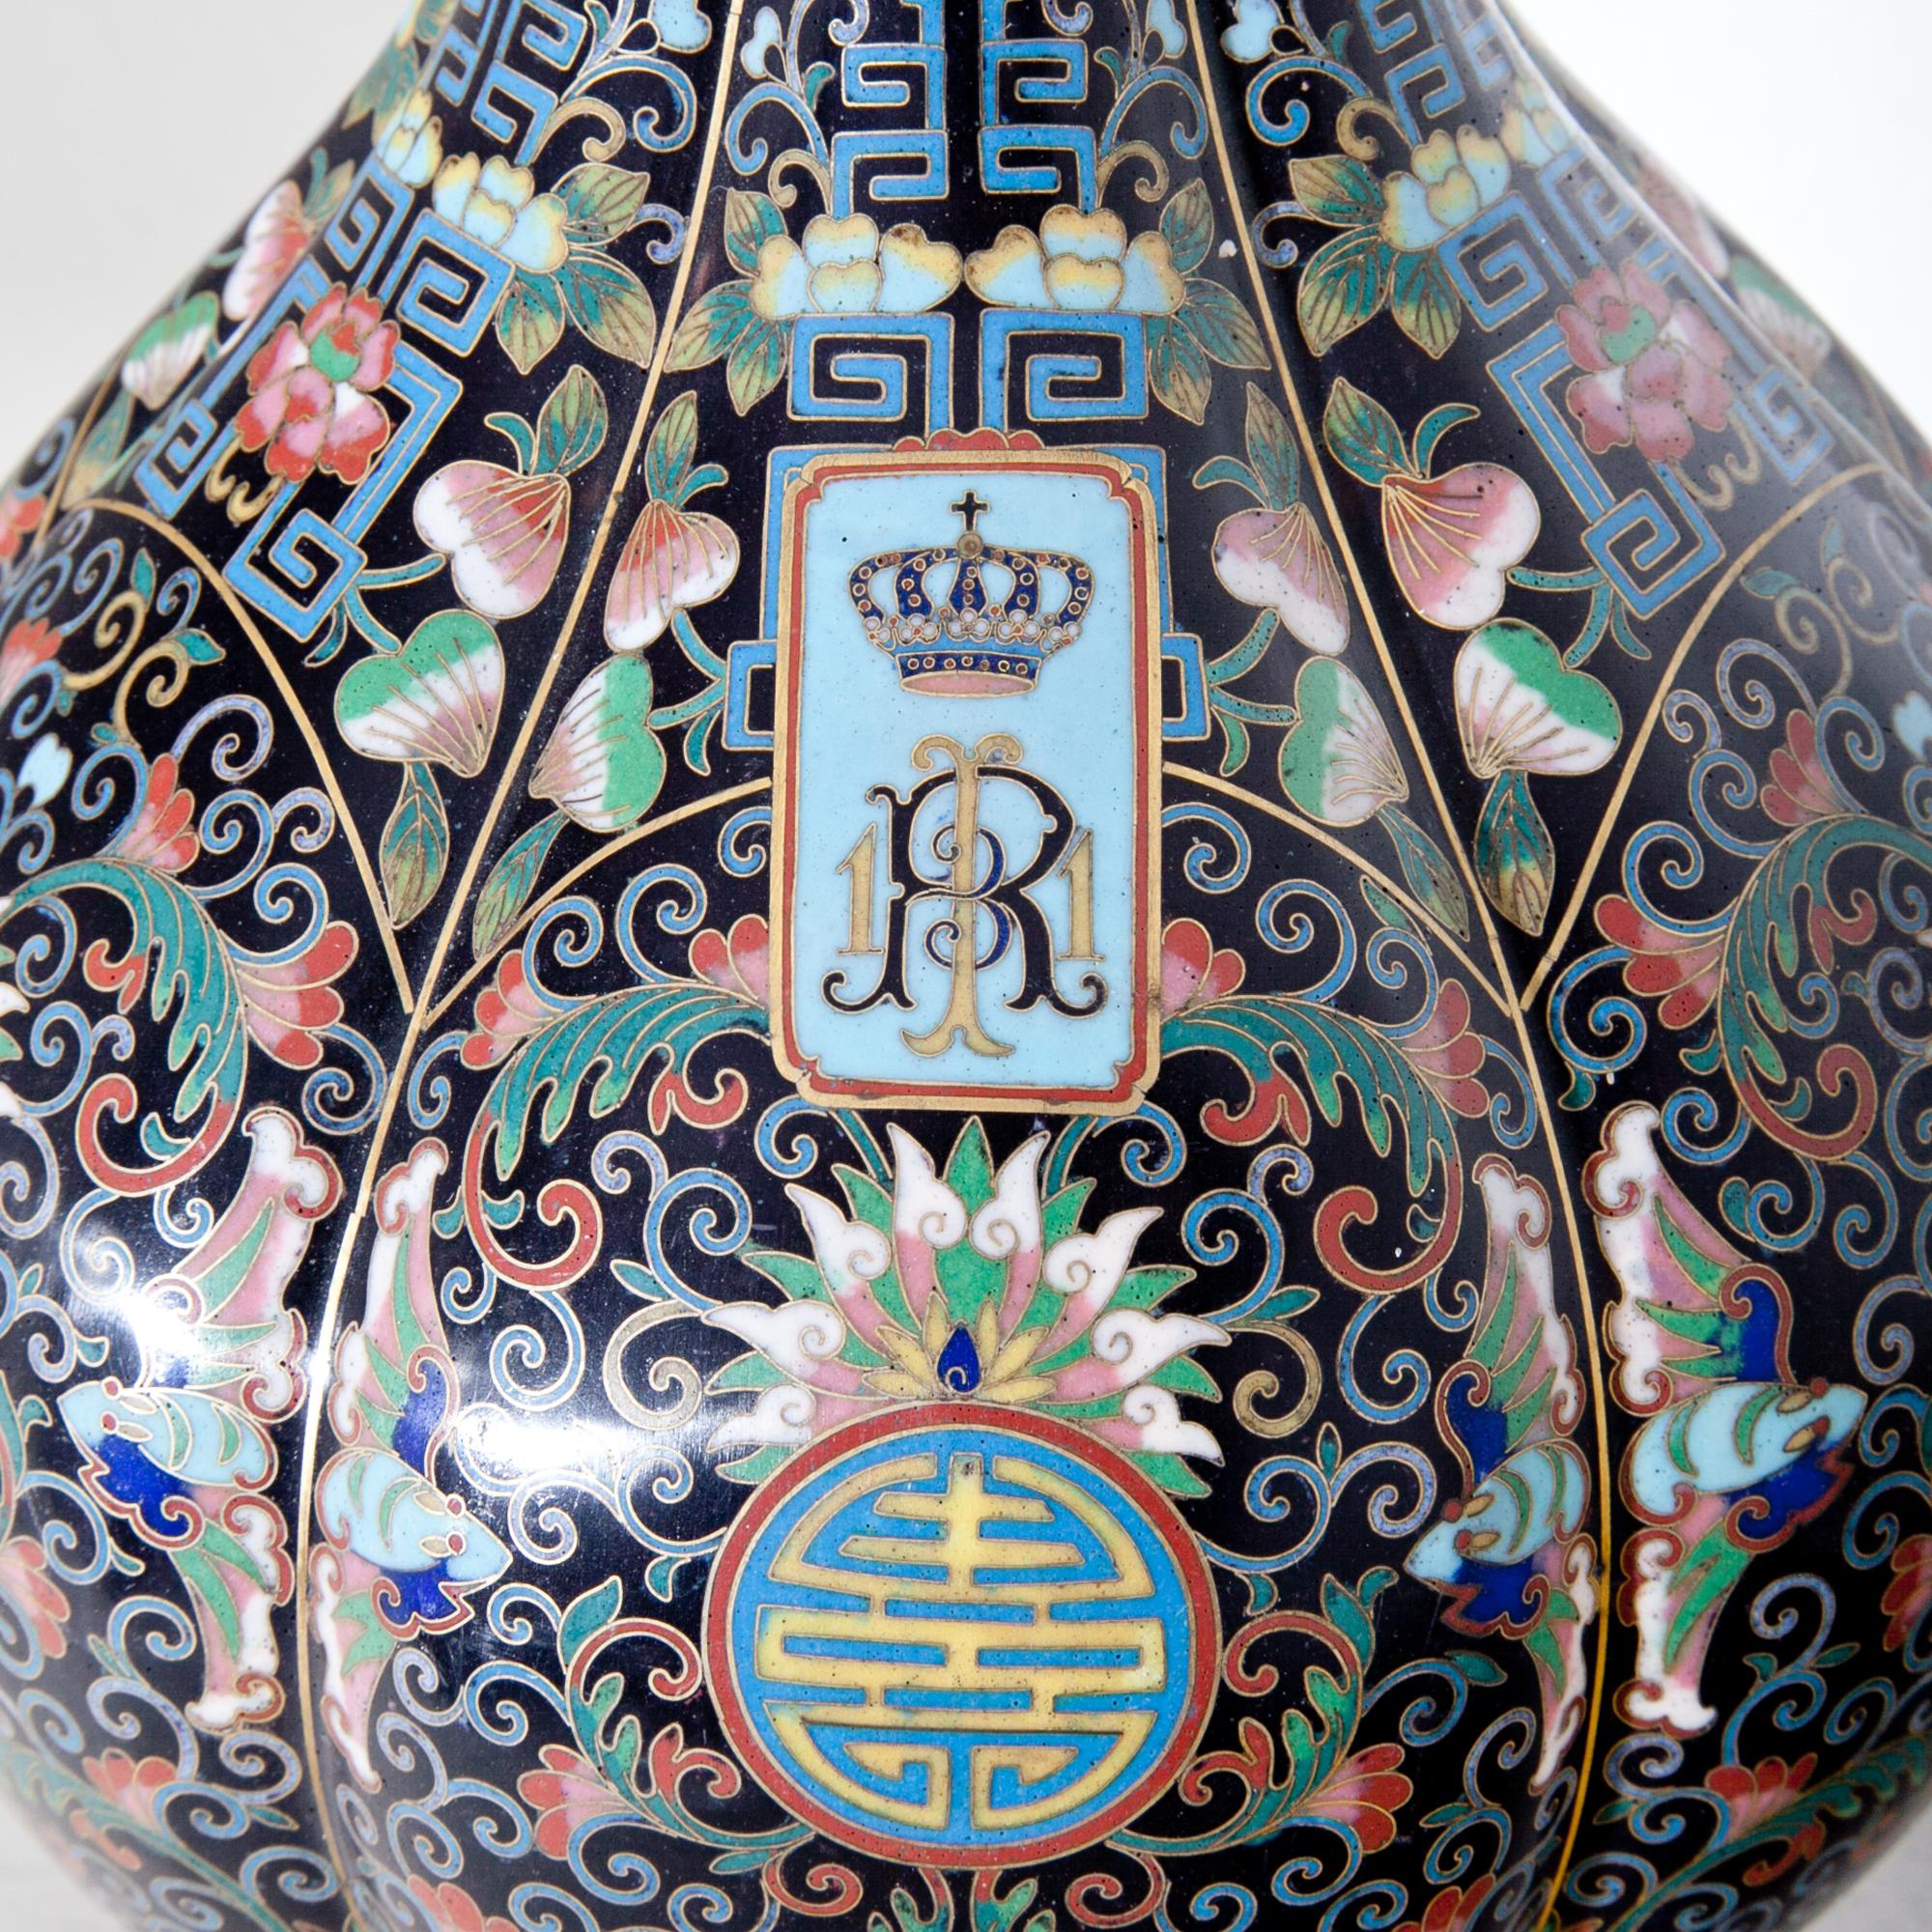 Cloisonné-Vase für eine europäische Königsfamilie in Form einer Kürbisflasche, verziert mit asiatischen Ornamenten und der königlichen Chiffre RI 11. Steht auf einem geschnitzten Holzständer.